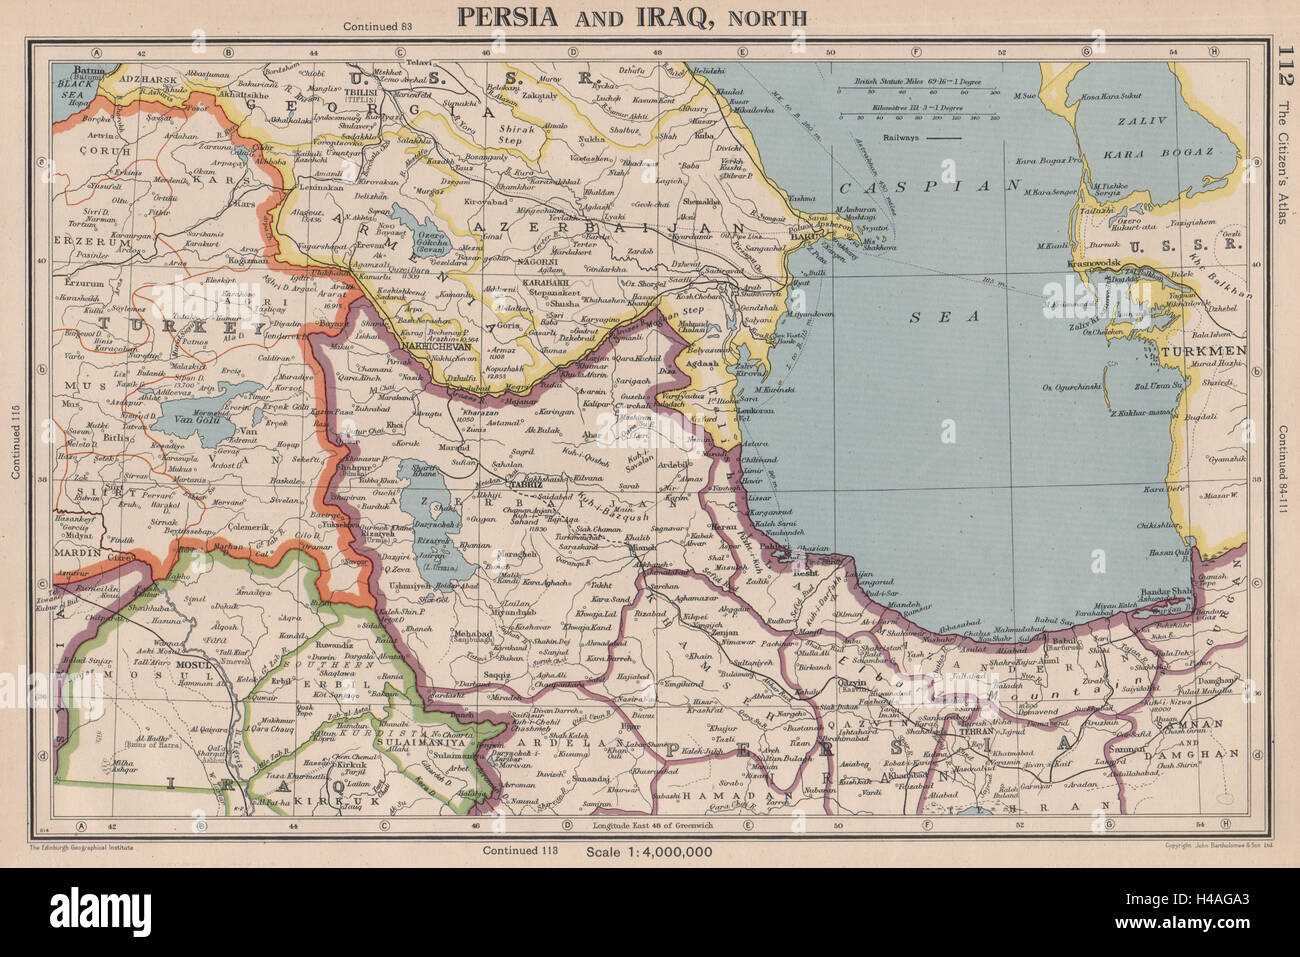 Le sud du Caucase. La Perse (Iran) au nord de l'Iraq. L'Azerbaïdjan Arménie Turquie 1944 map Banque D'Images